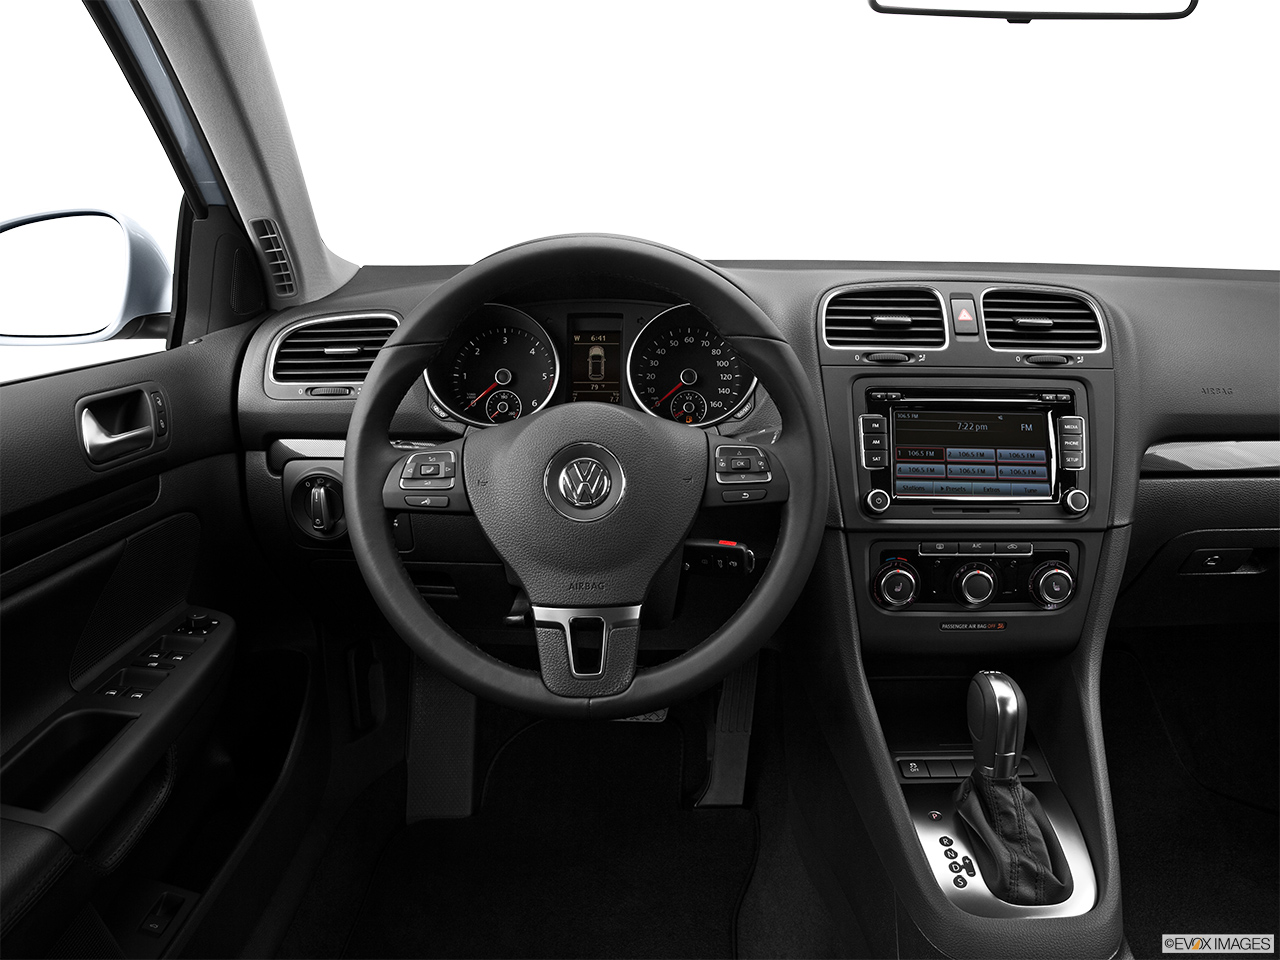 2013 Volkswagen Jetta SportWagen TDI Steering wheel/Center Console. 